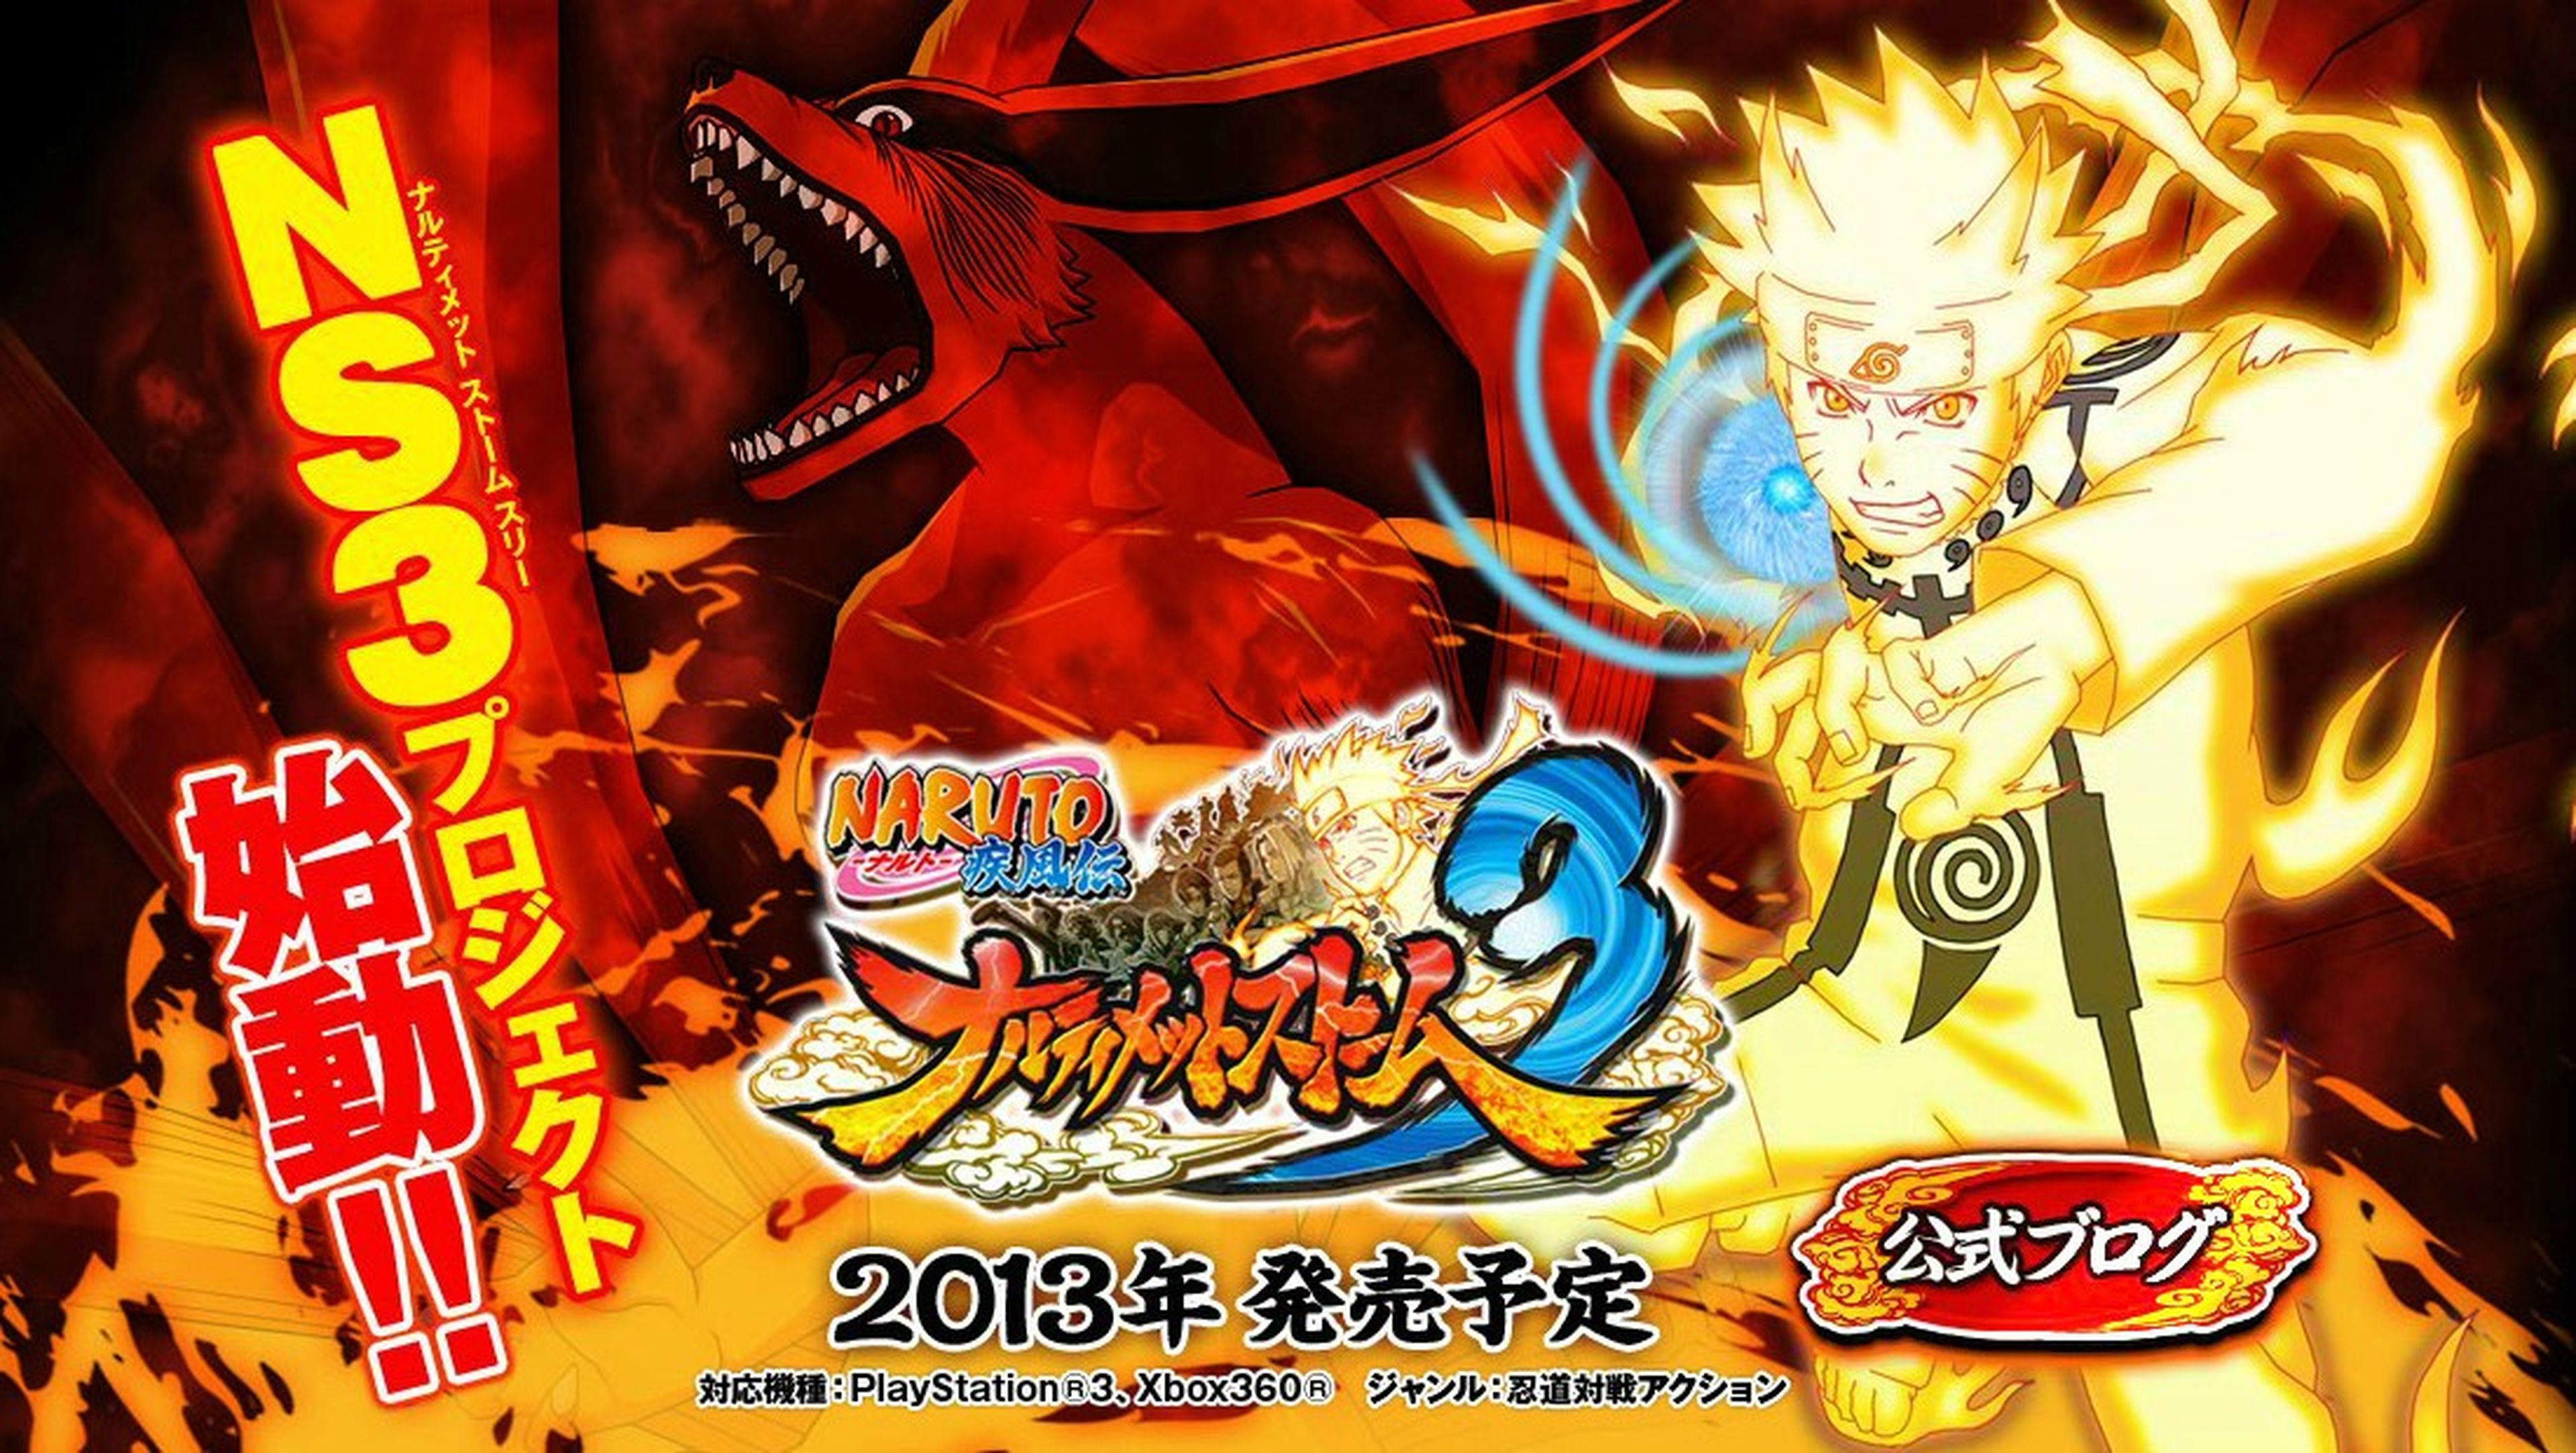 Naruto volverá a las consolas en 2013